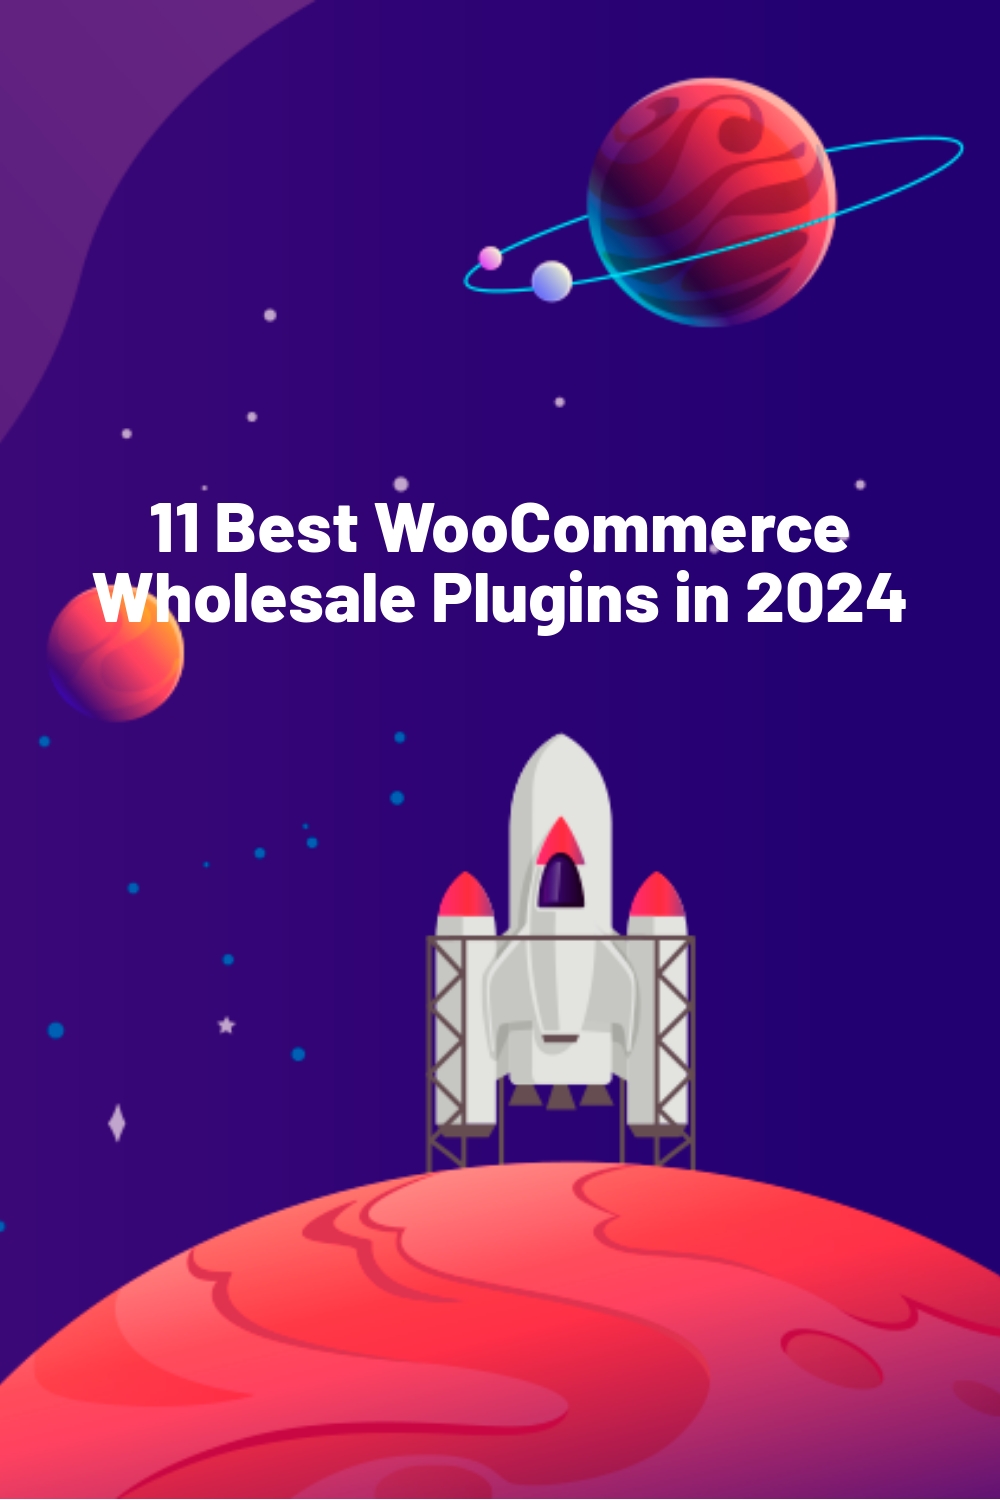 11 Best WooCommerce Wholesale Plugins in 2024